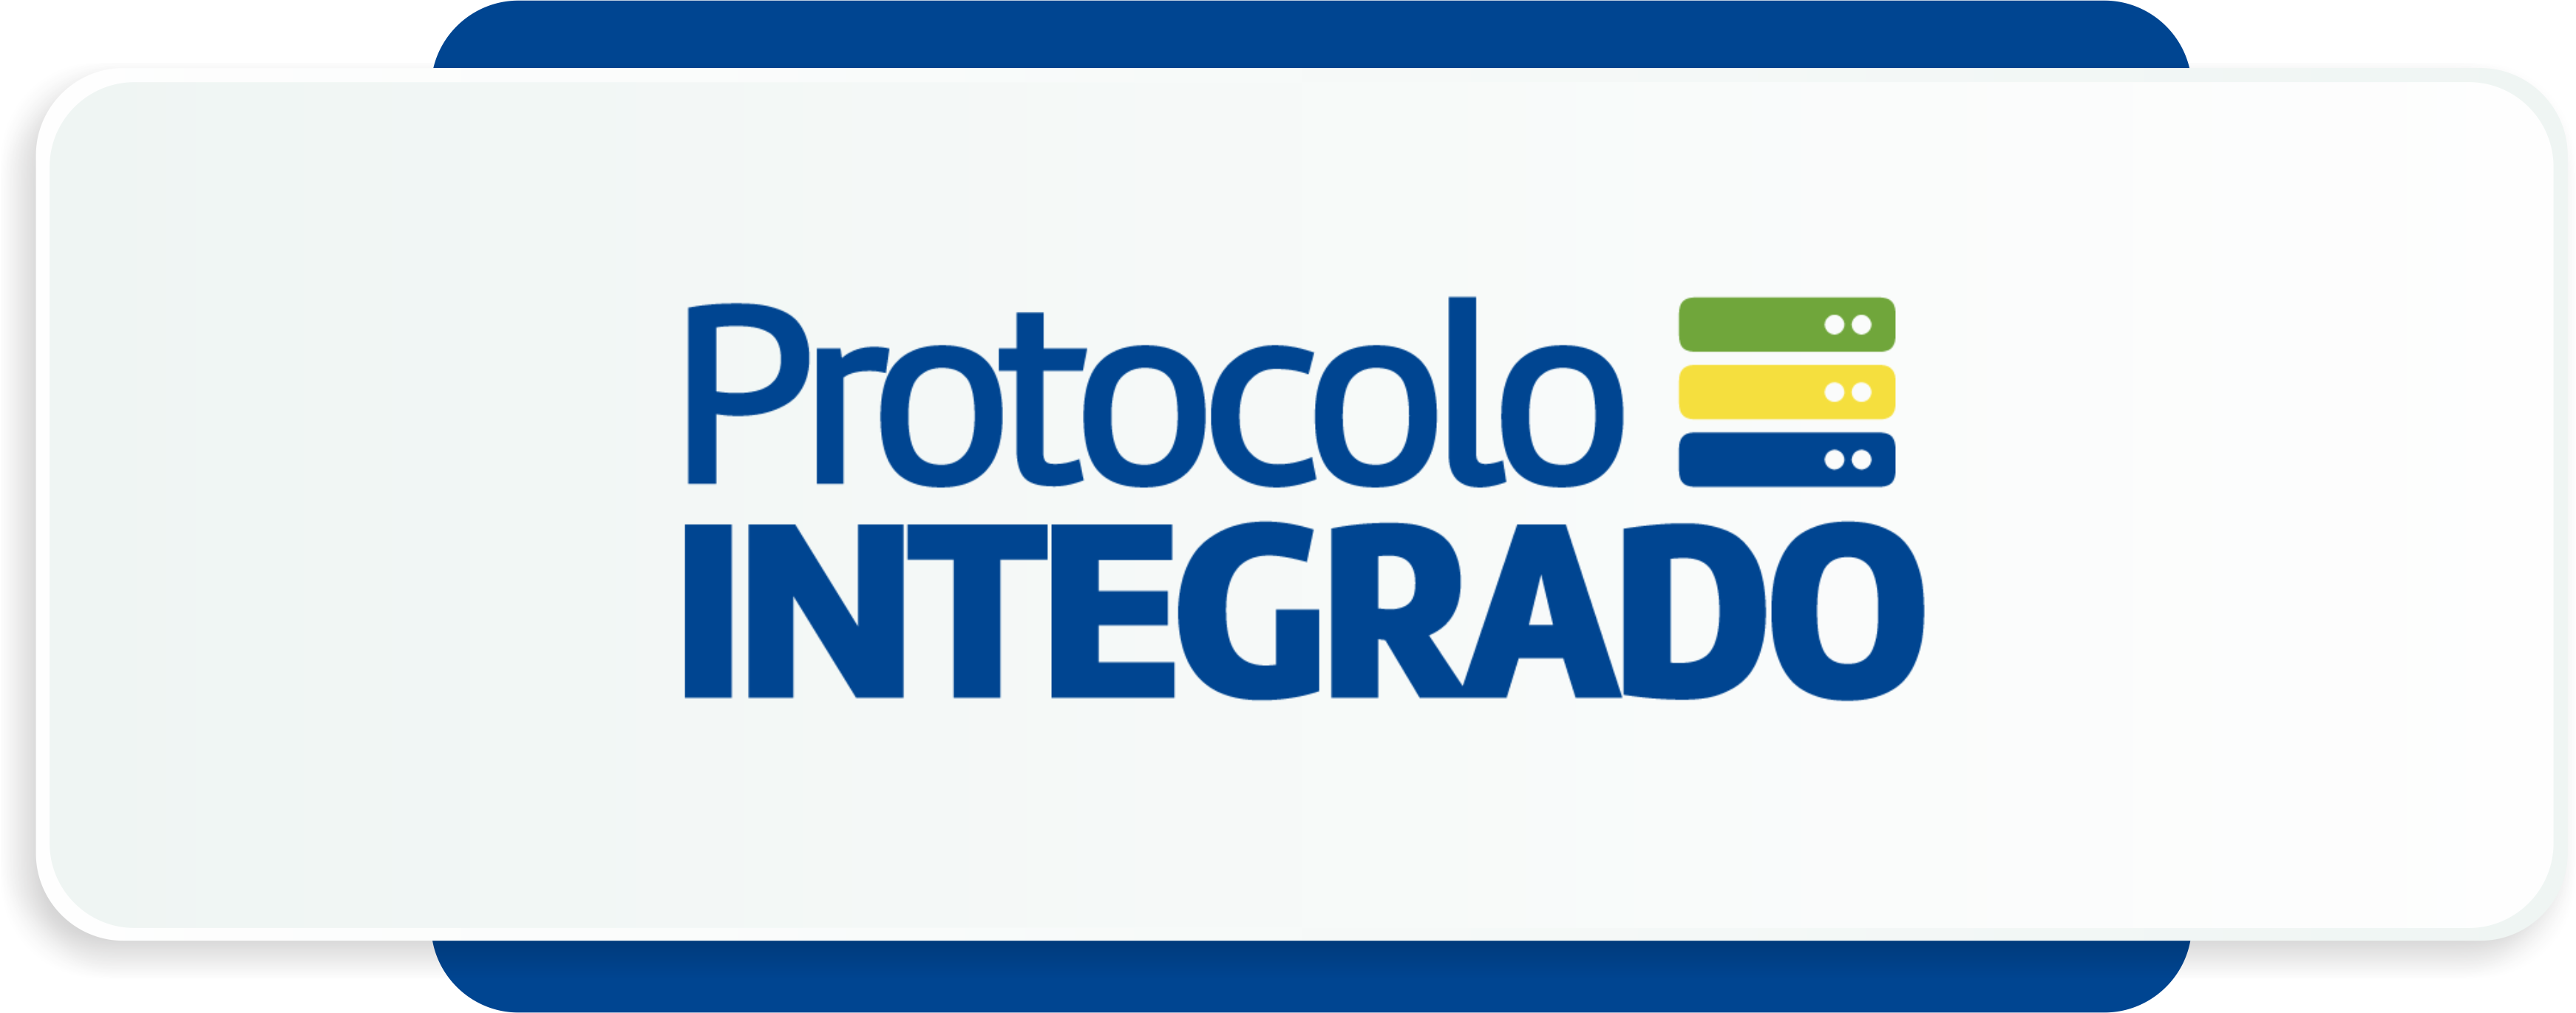 Banner com a logo do Protocolo Integrado com link para a página da ação